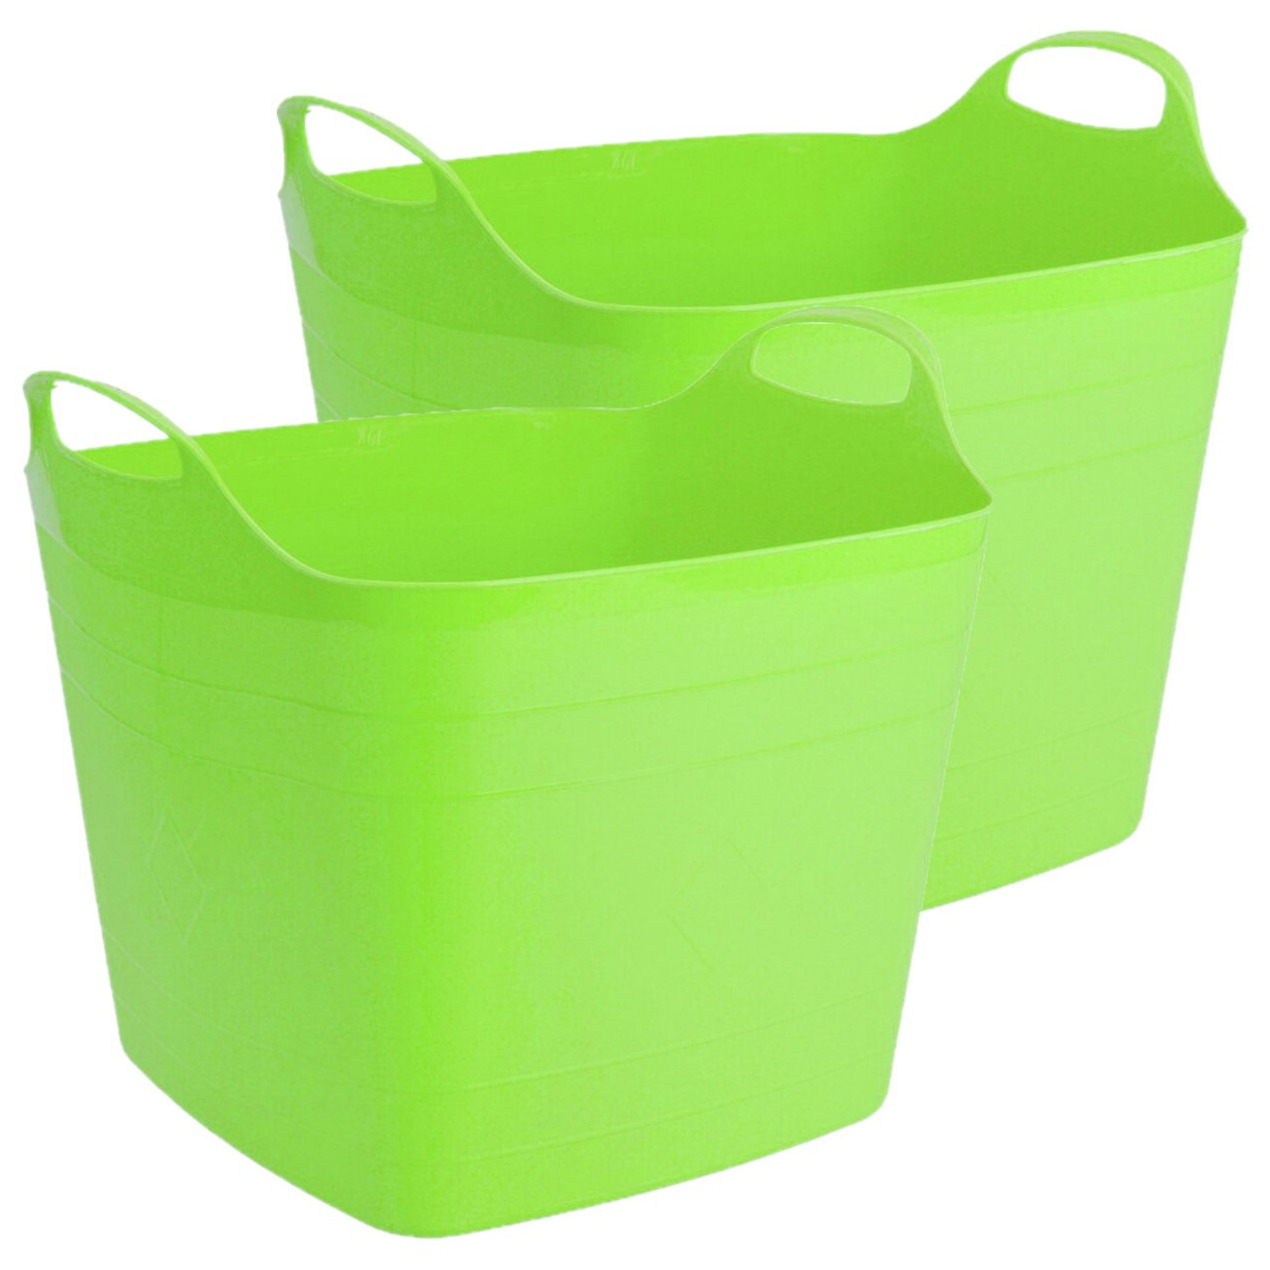 2x stuks flexibele kuip emmer-wasmand vierkant groen 40 liter